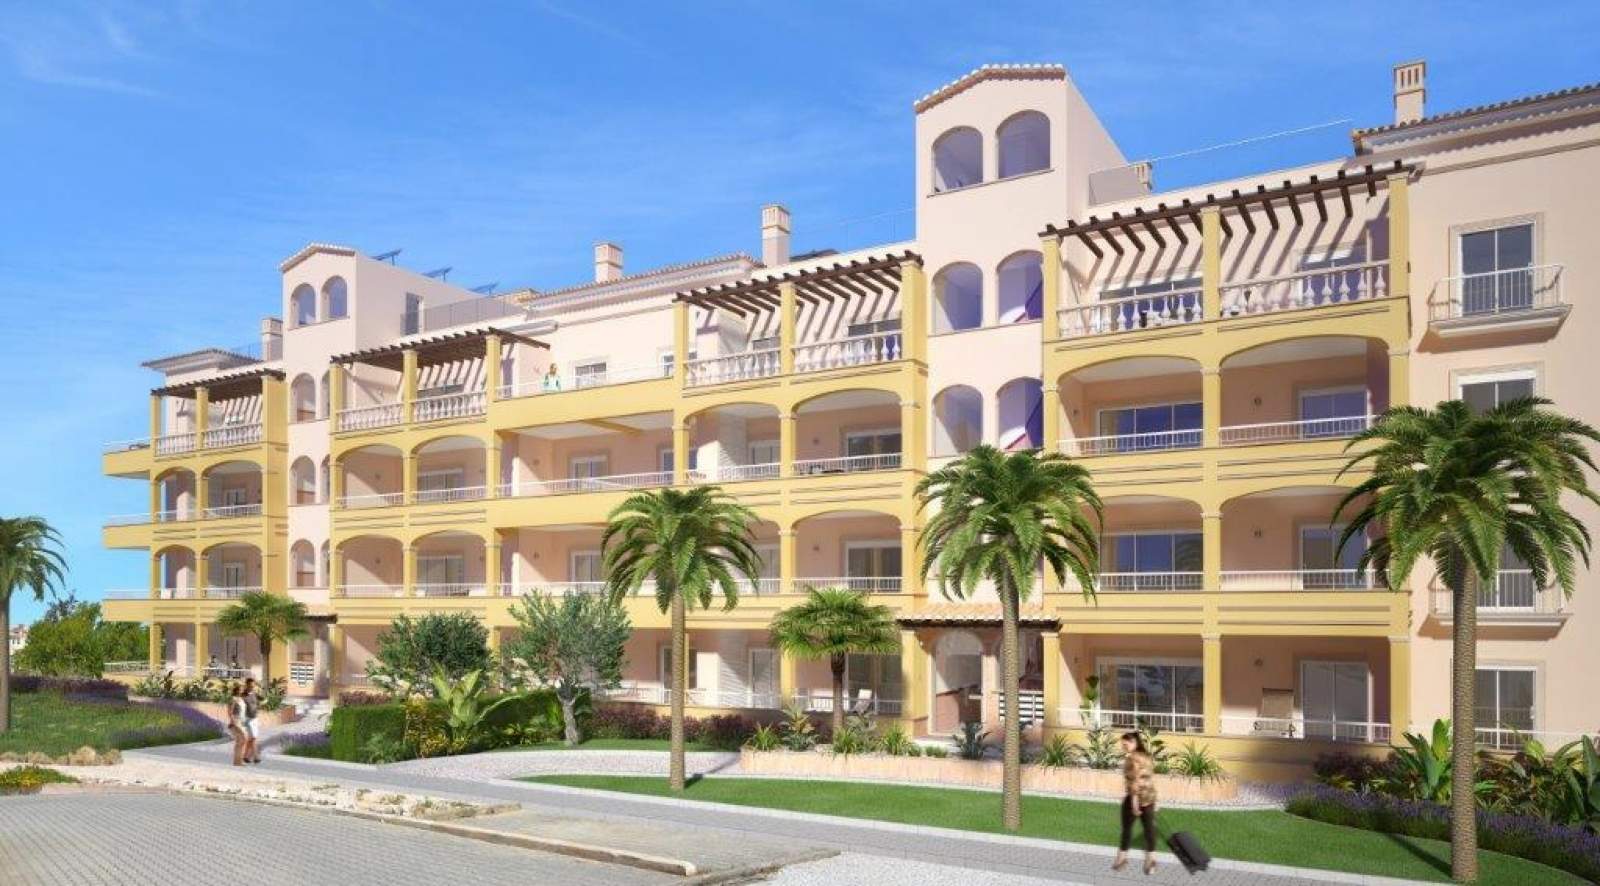 Verkauf einer Wohnung im Bau, mit Terrasse, Lagos, Algarve, Portugal_141577